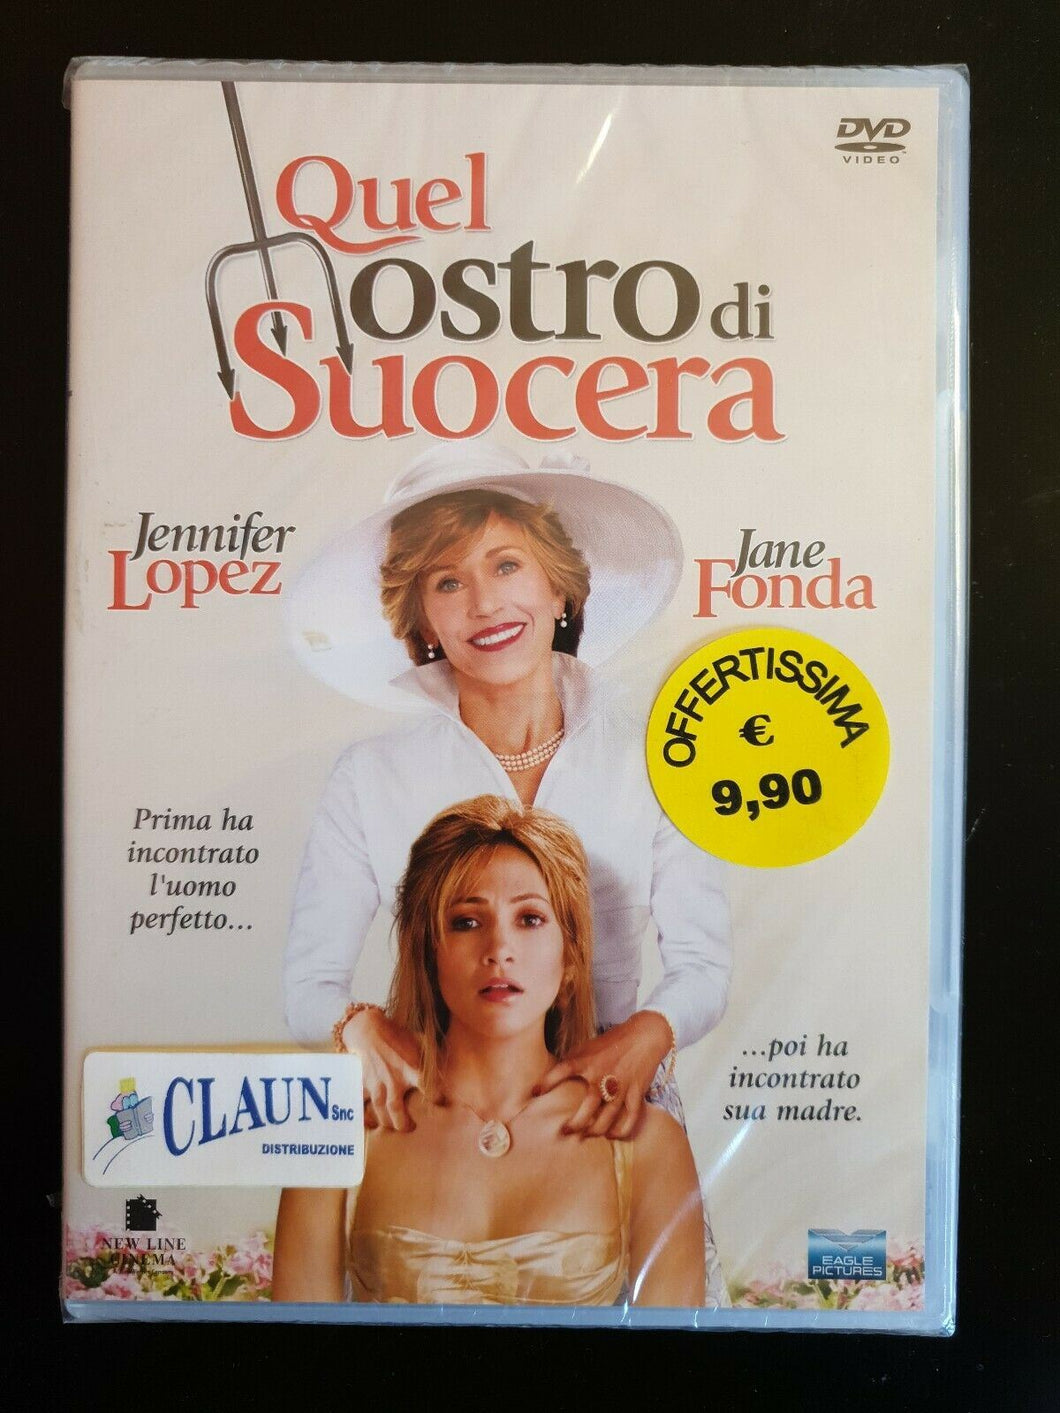 Quel mostro di suocera (2005) DVD Nuovo